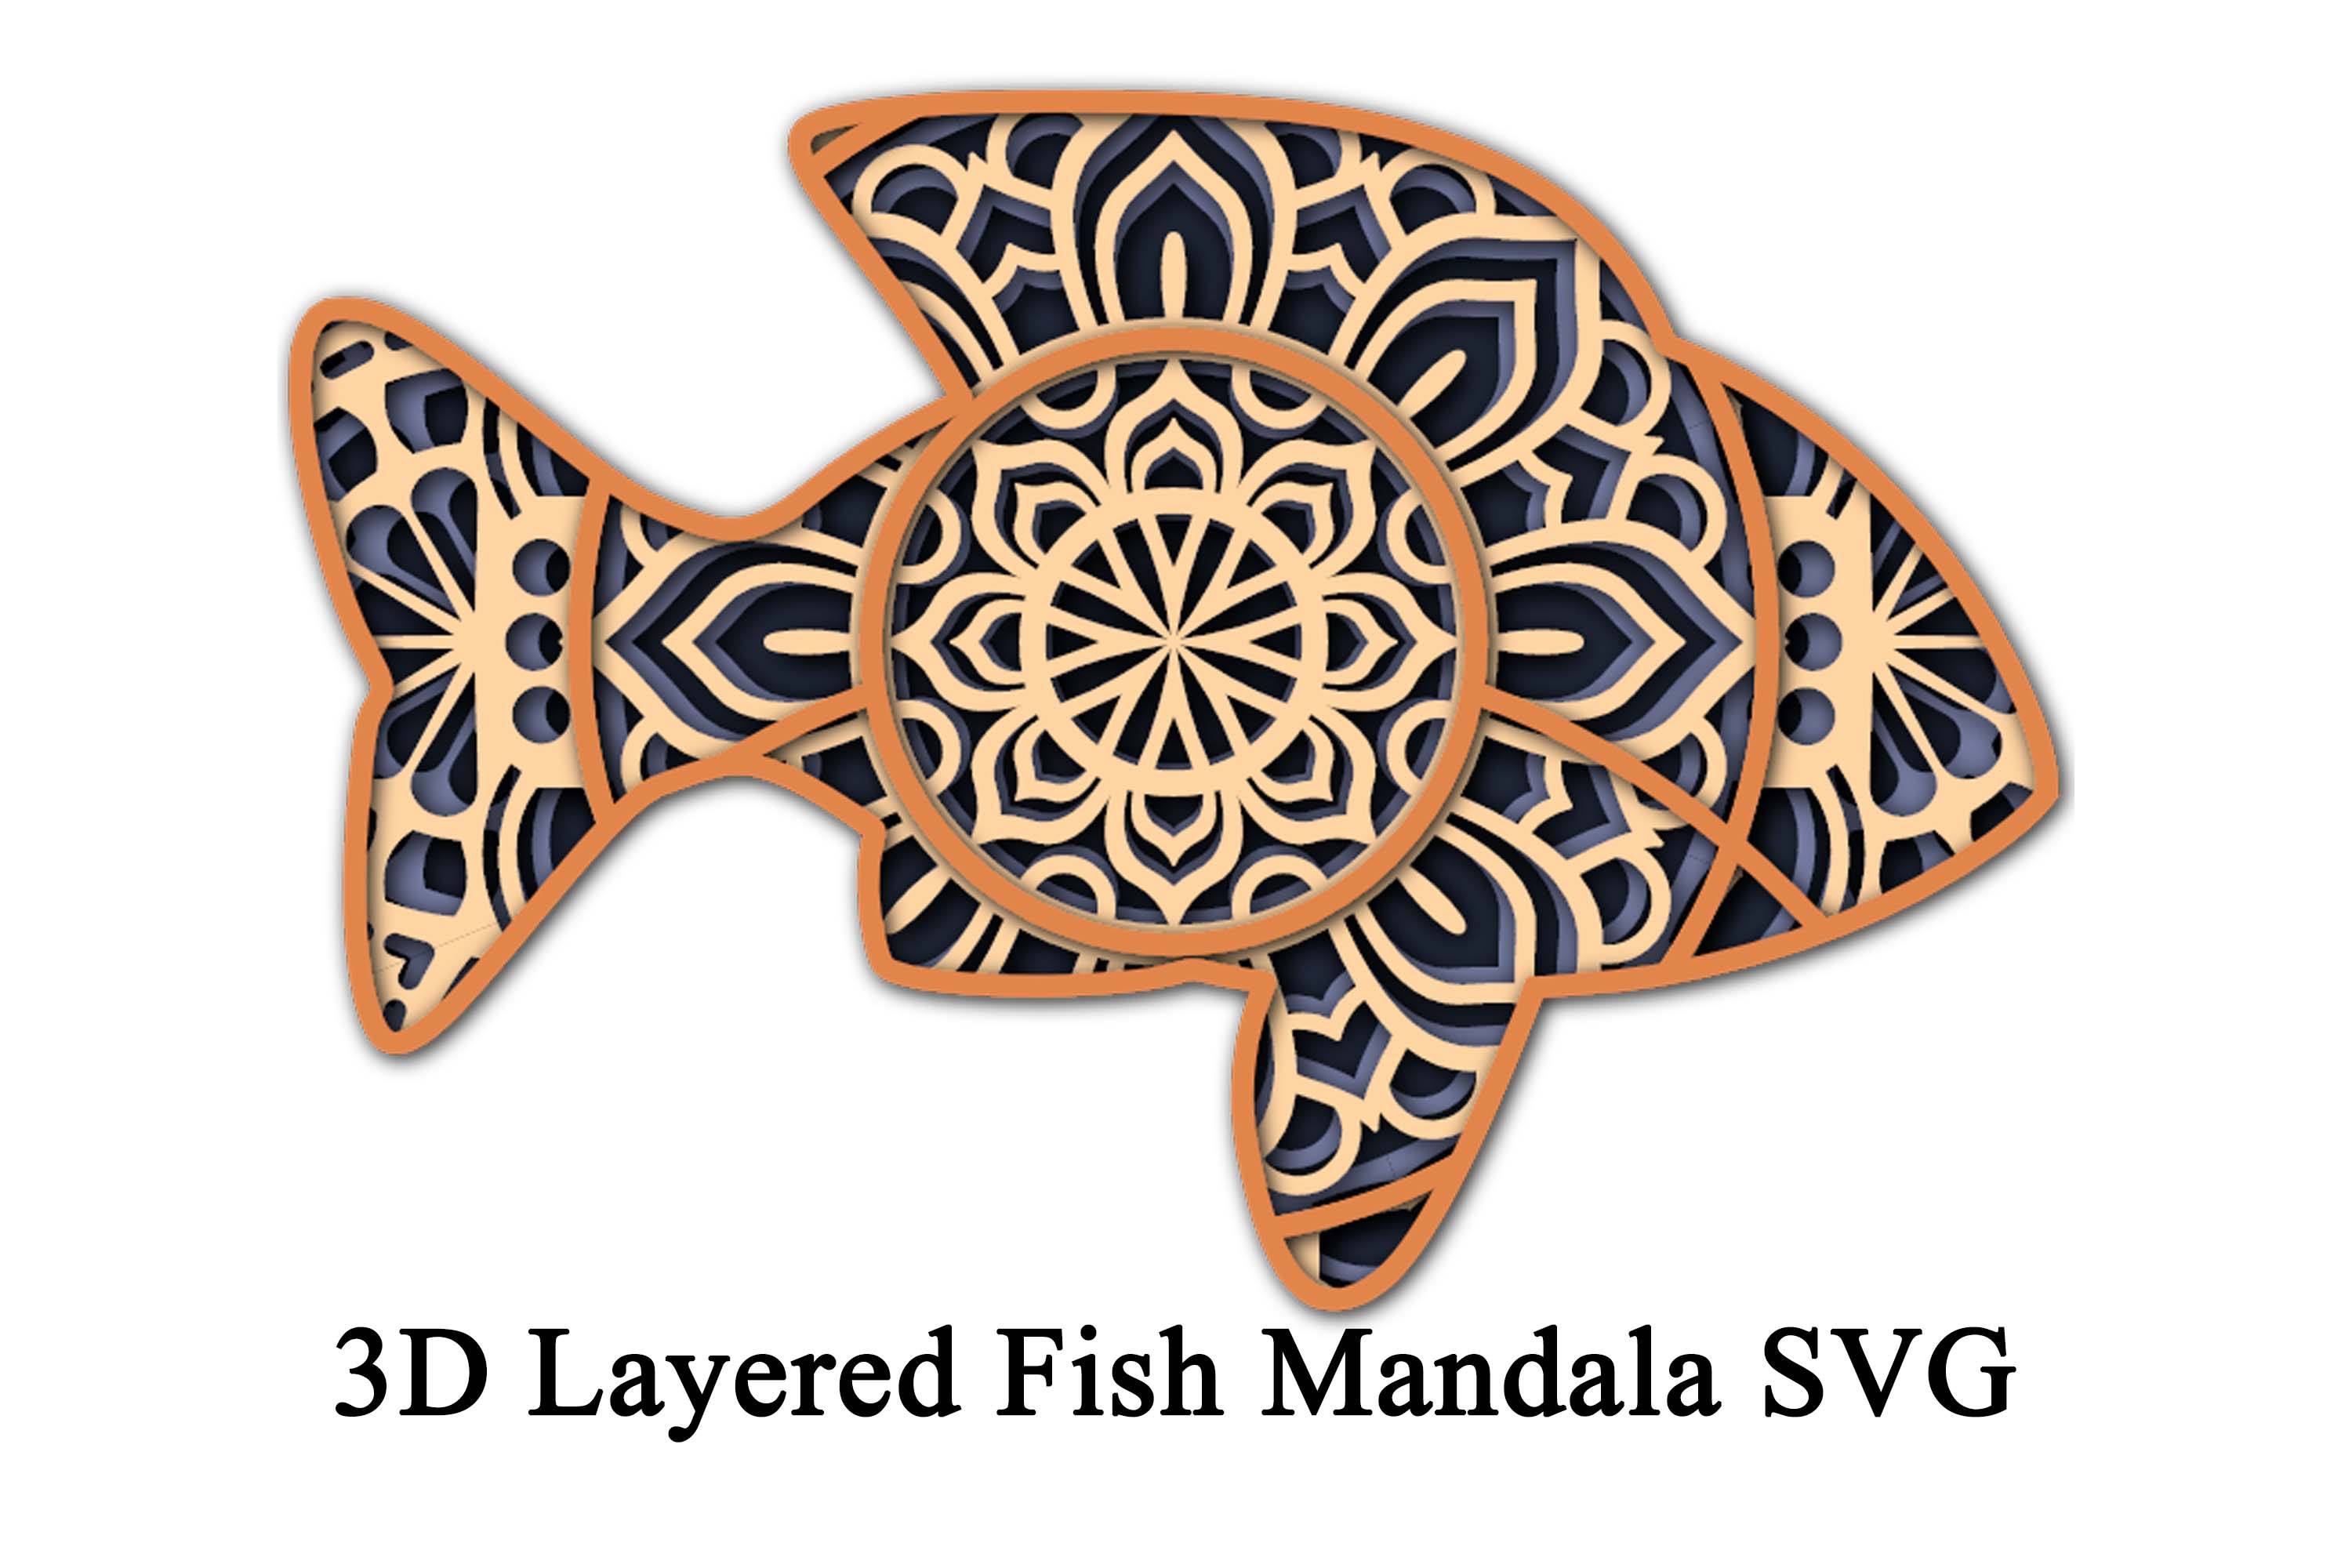 Download Layered Cat Mandala Svg So Fontsy